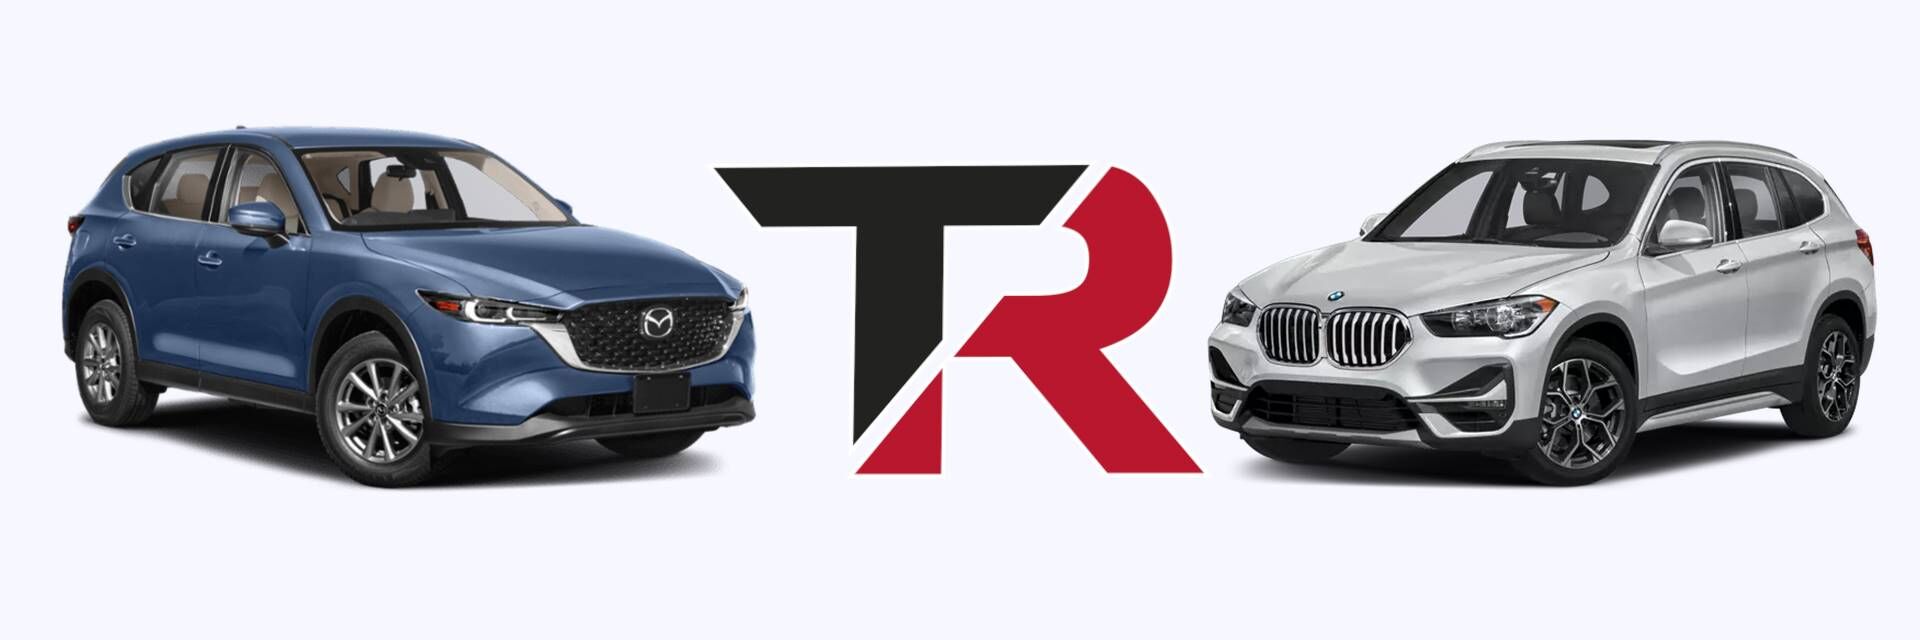 Comparativa Mazda CX 5 y BMW X1 ¿Qué coche comprar?